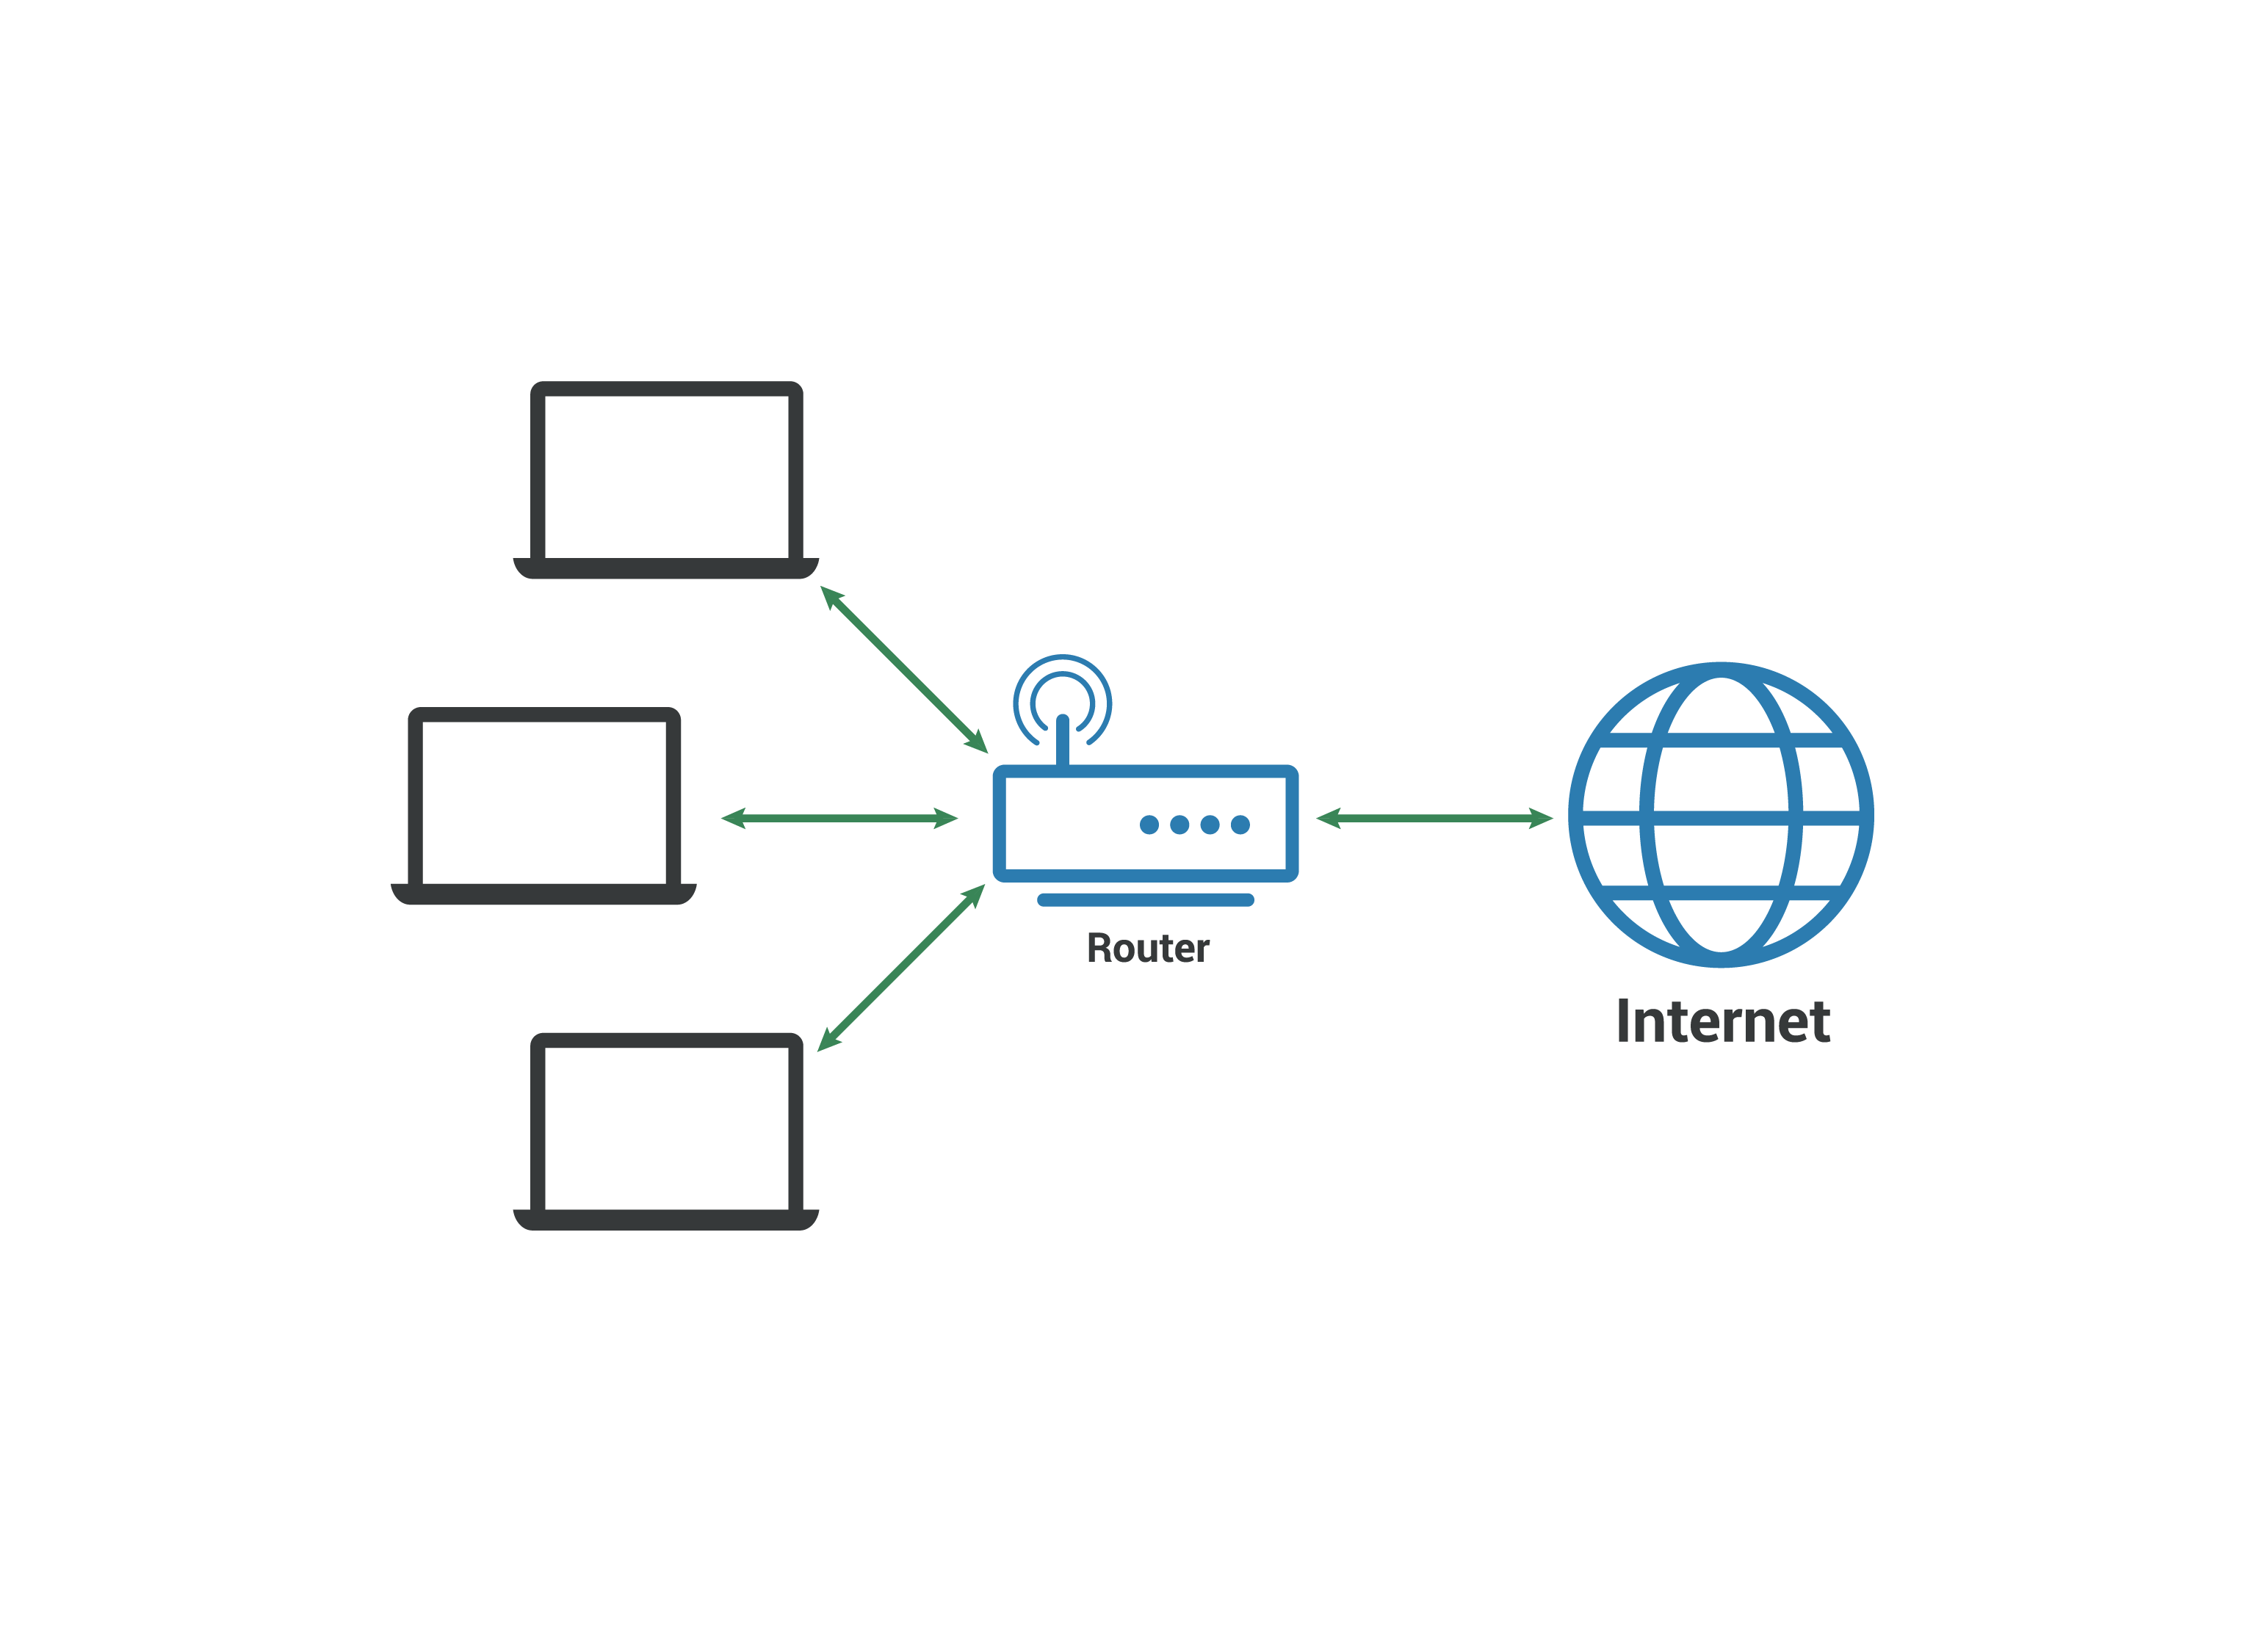 Réseau local LAN - Les ordinateurs se connectent à un routeur qui se connecte à l'Internet.